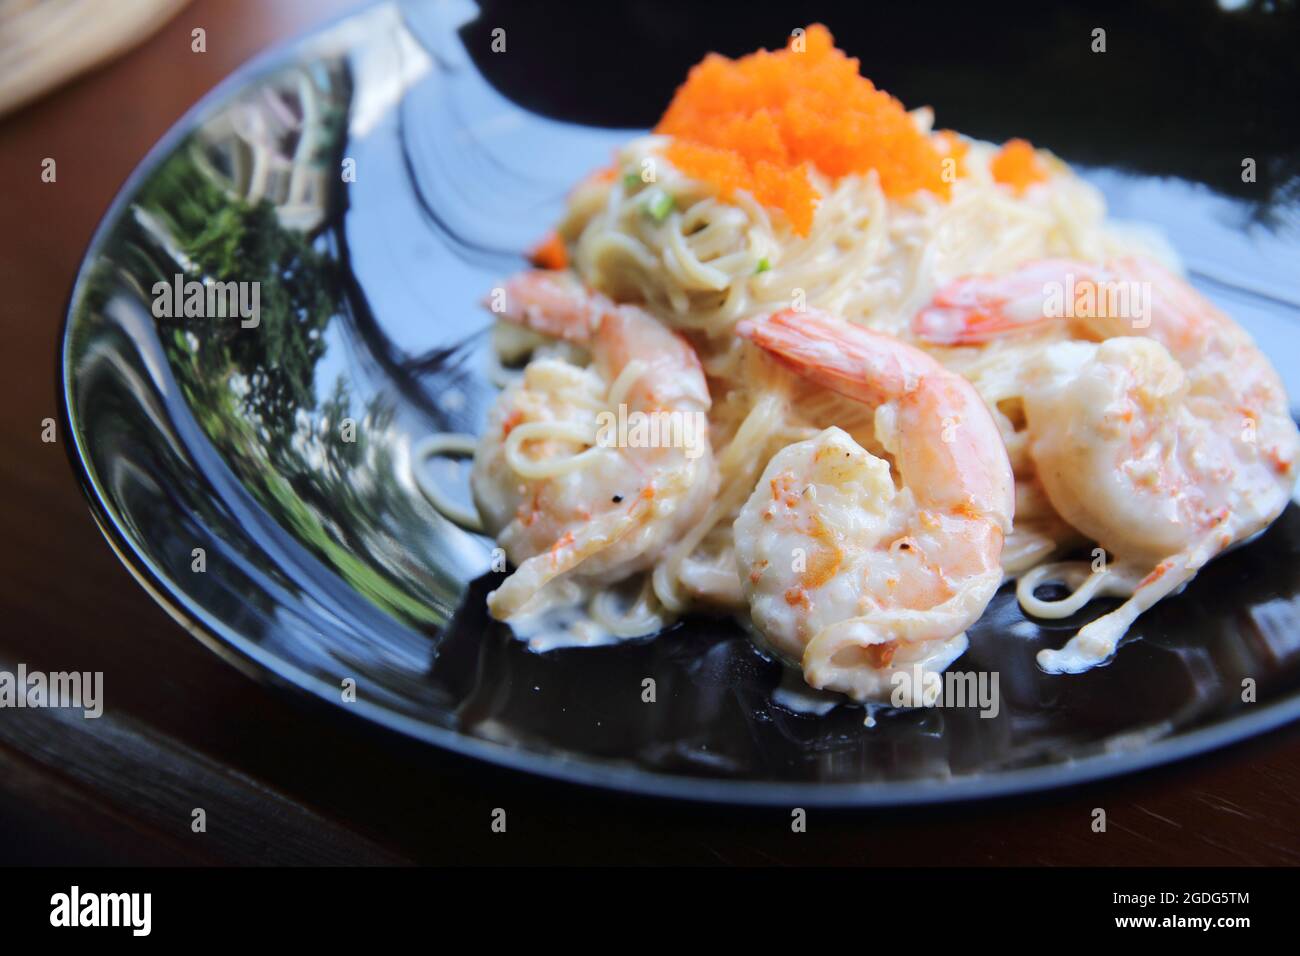 Shrimp spaghetti with white sacue Stock Photo